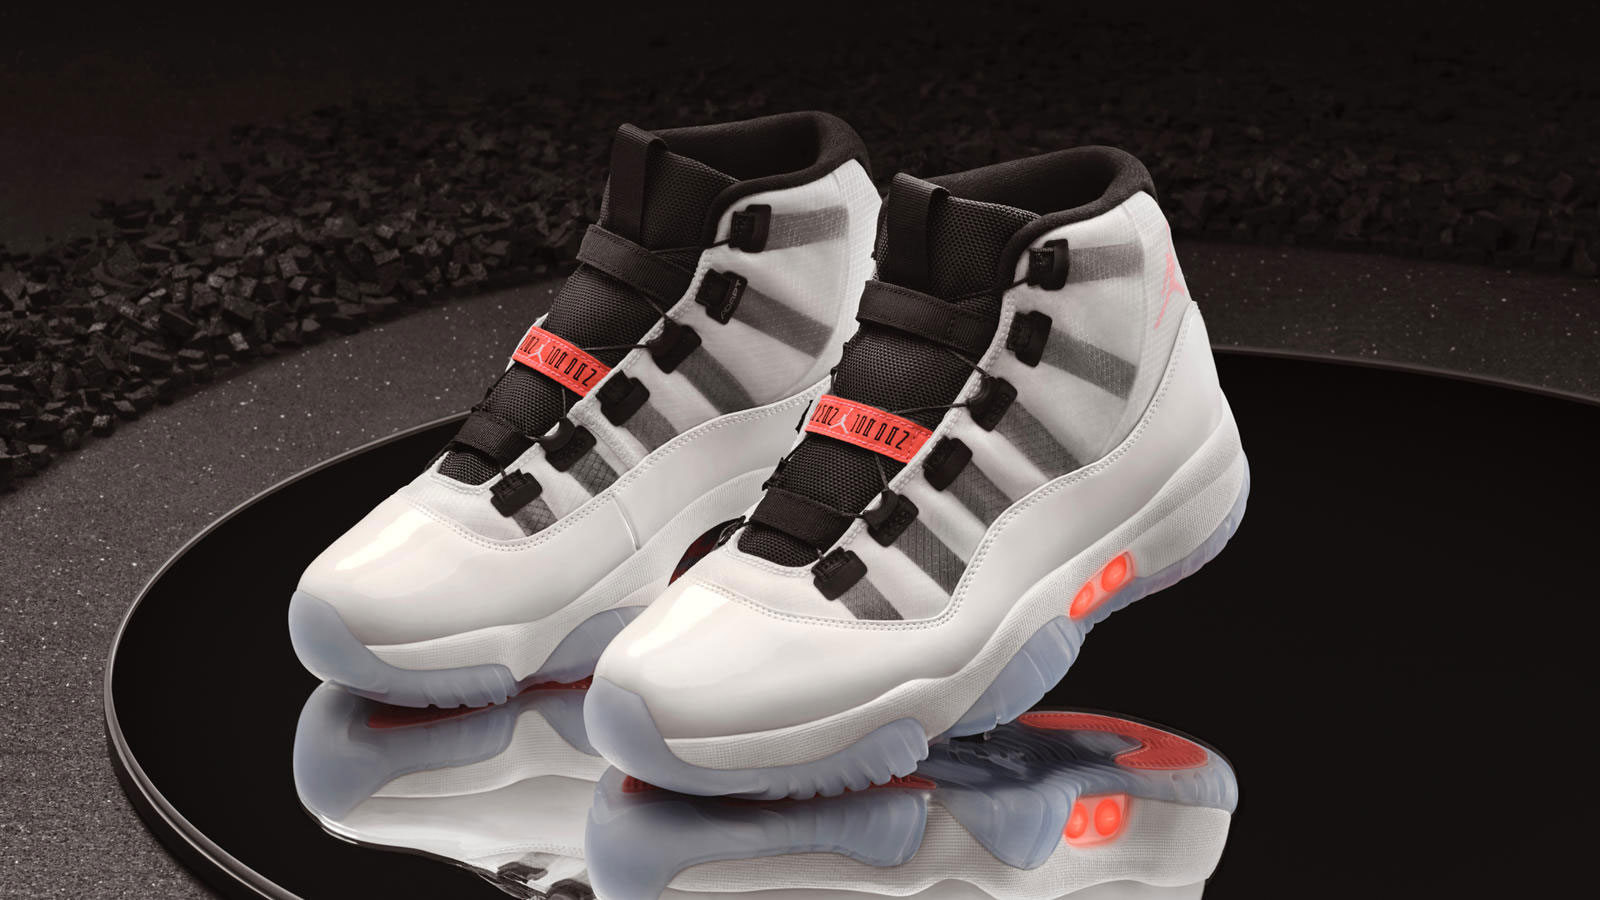 Giày thể thao Air Jordan 11 Adapt (trắng) có chế độ tự cột dây giày